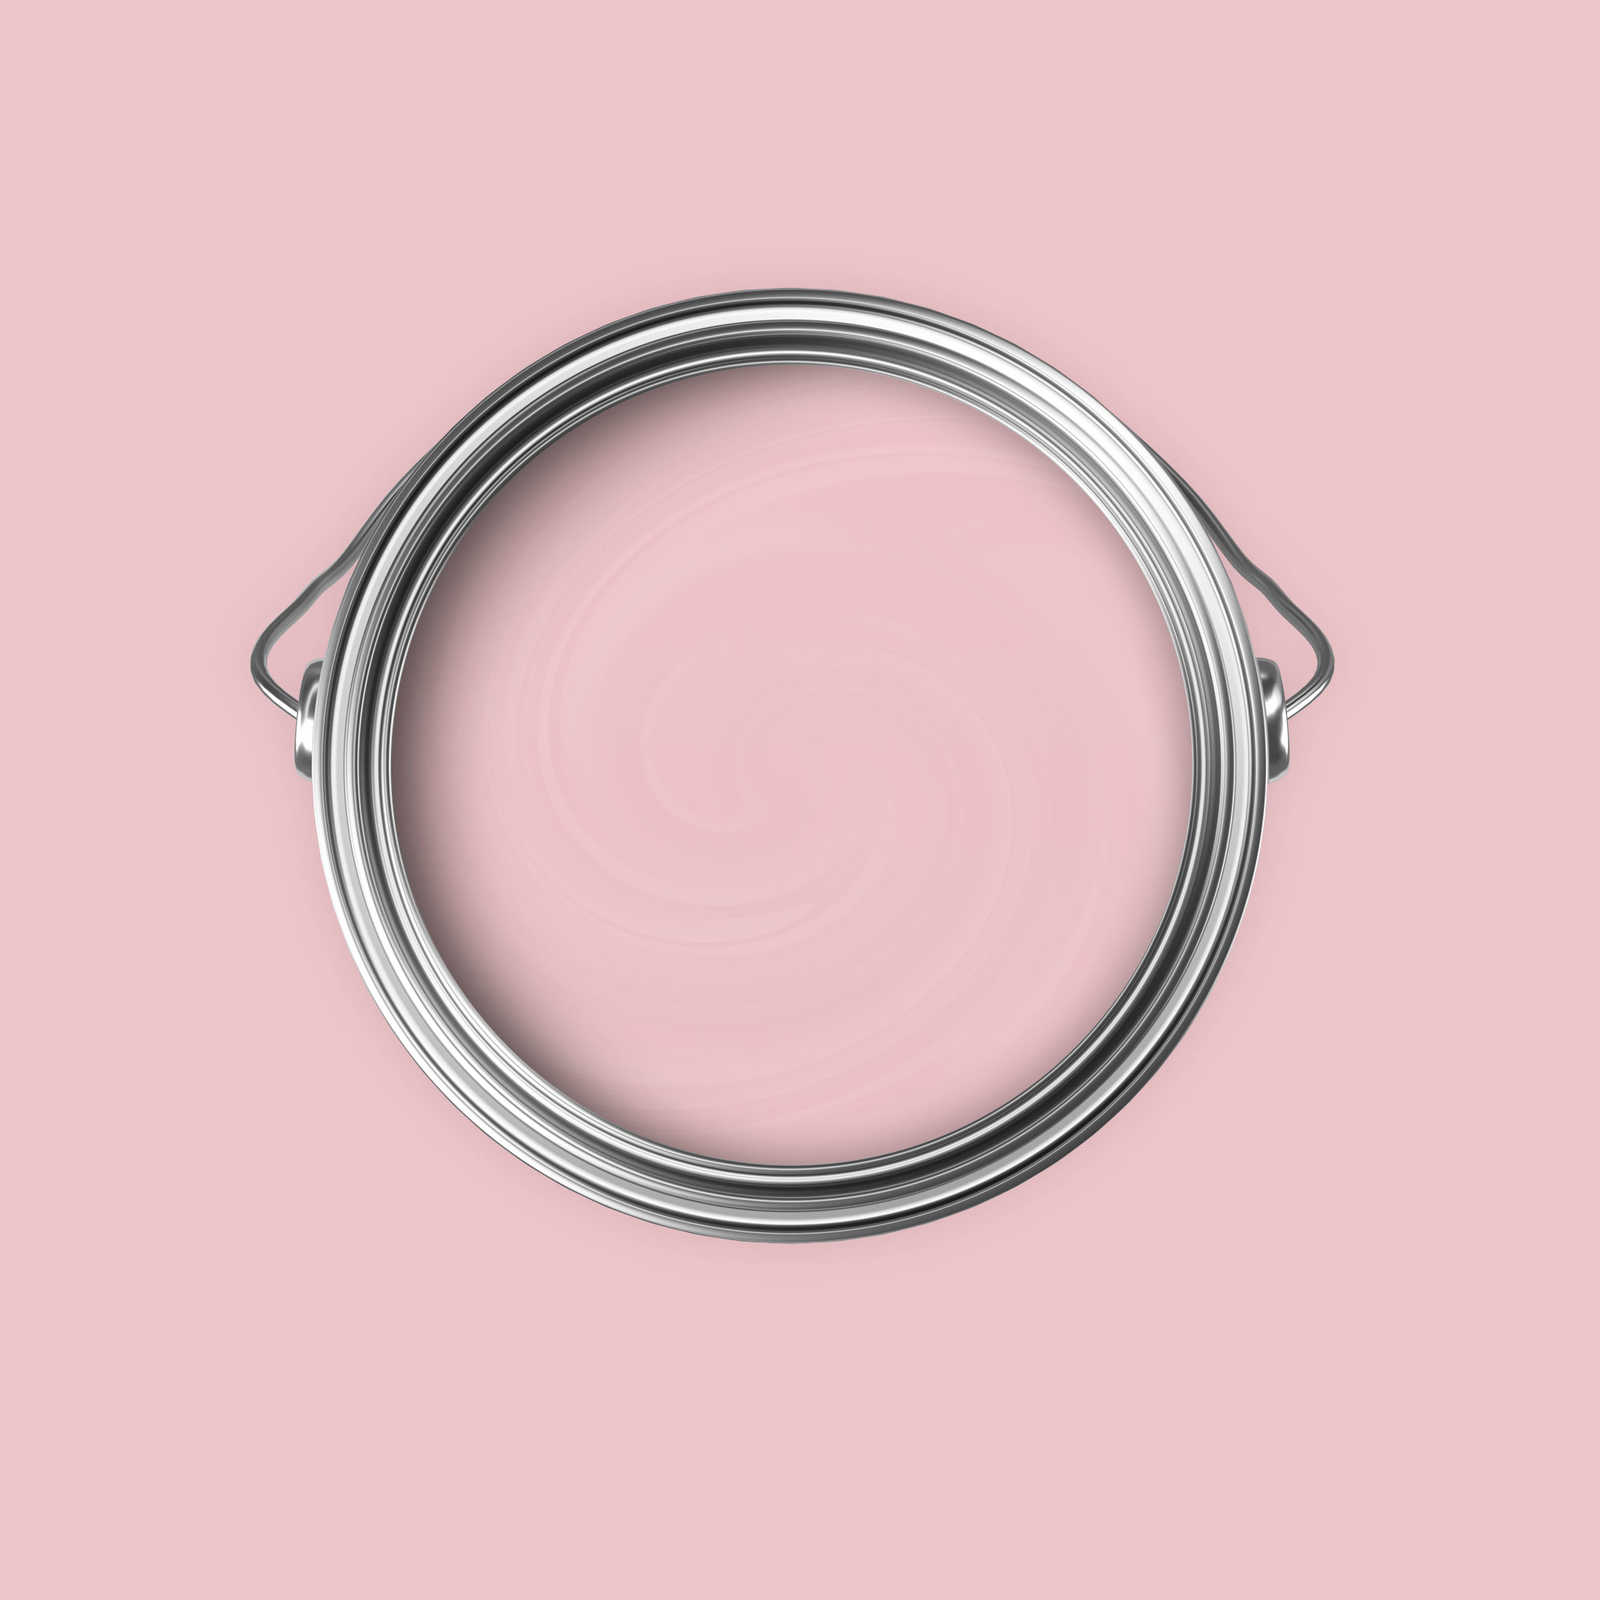             Pintura mural Premium rosa »Blooming Blossom« NW1016 – 5 litro
        